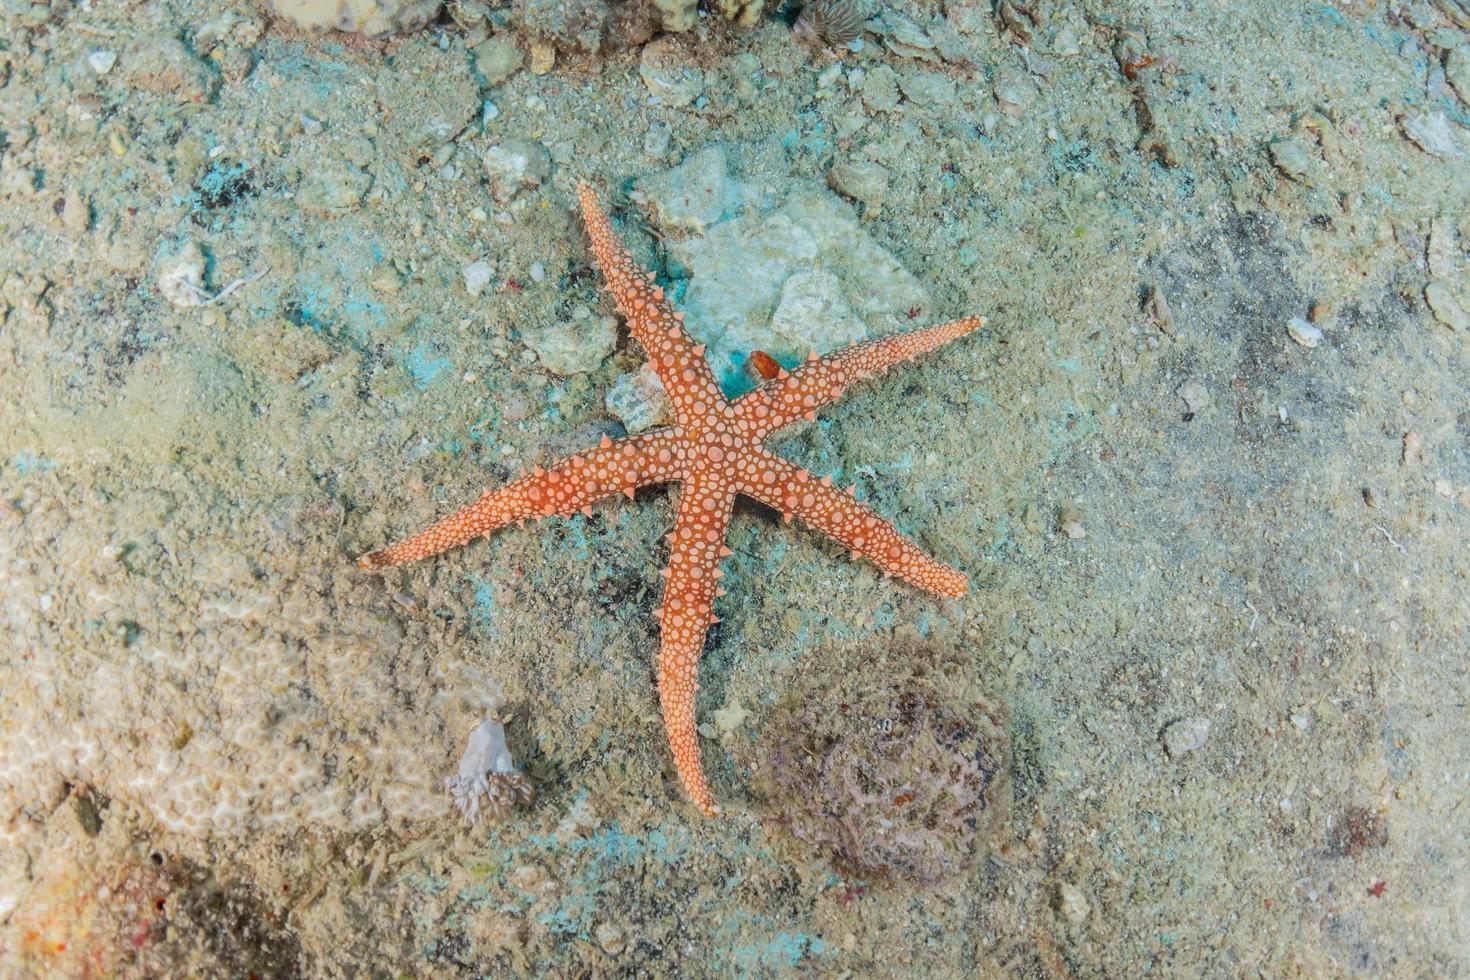 sjöstjärna på havsbotten i Röda havet, Eilat Israel foto